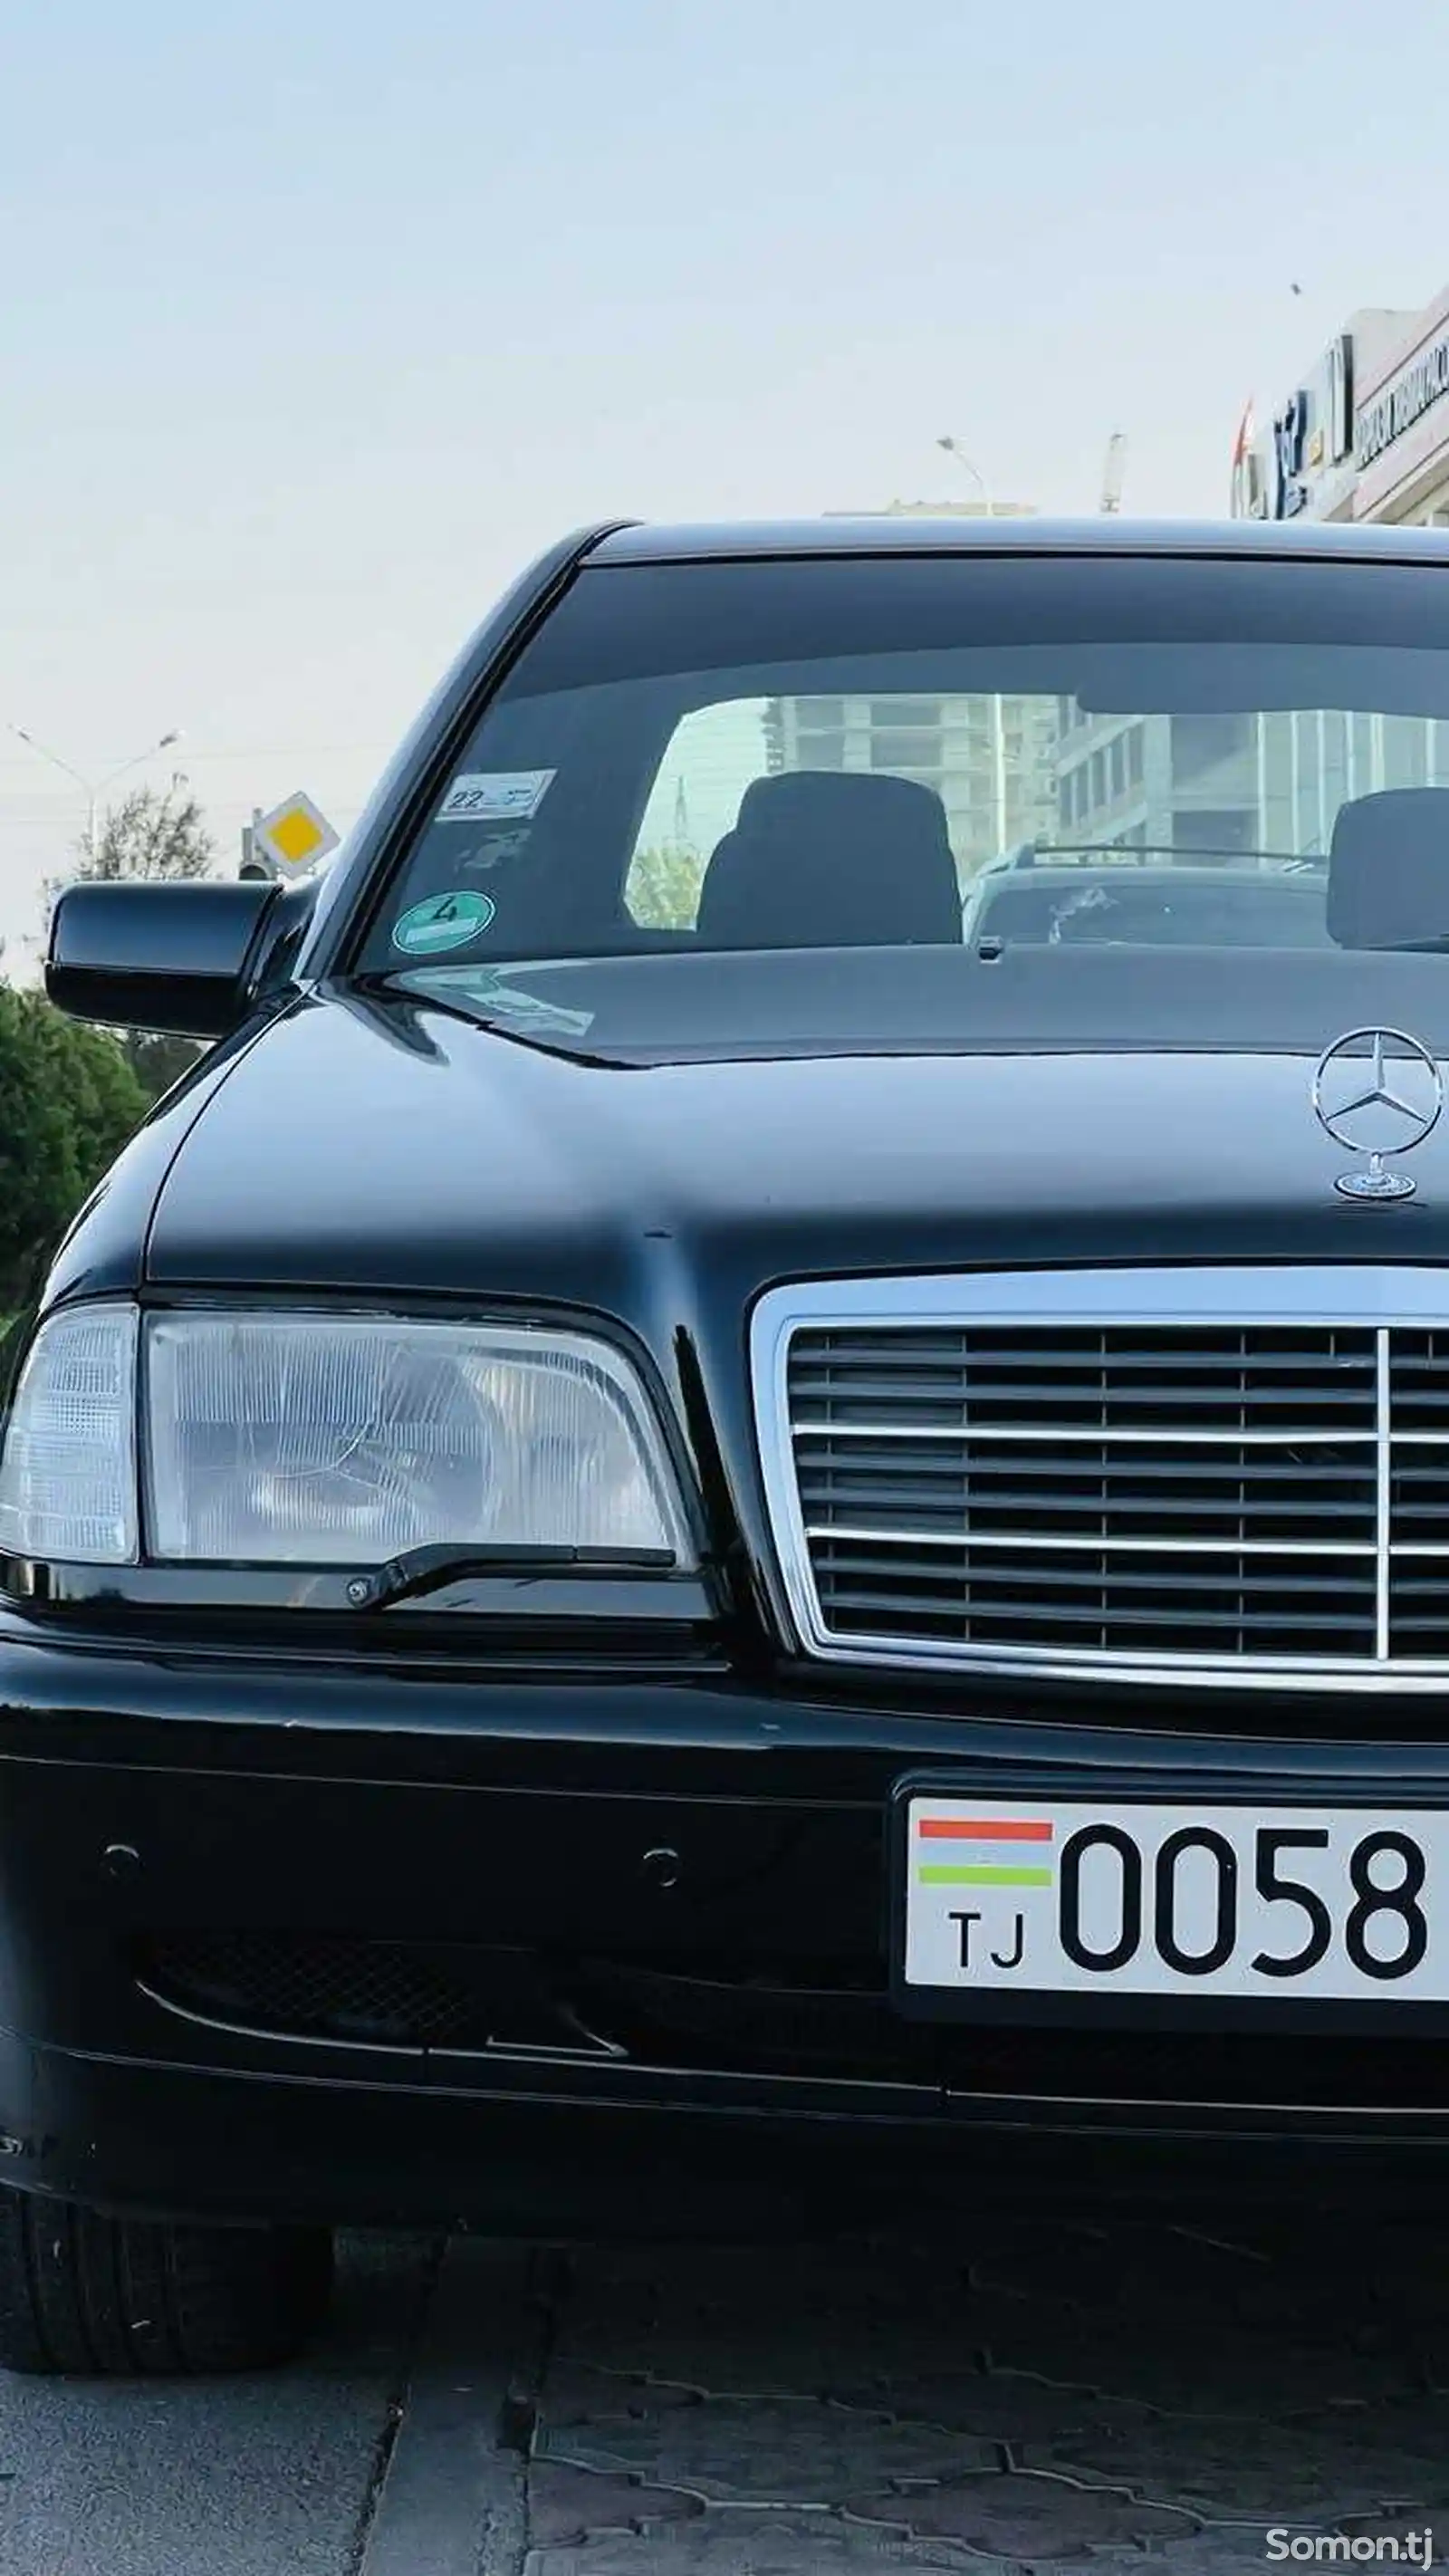 Mercedes-Benz C class, 1998-13